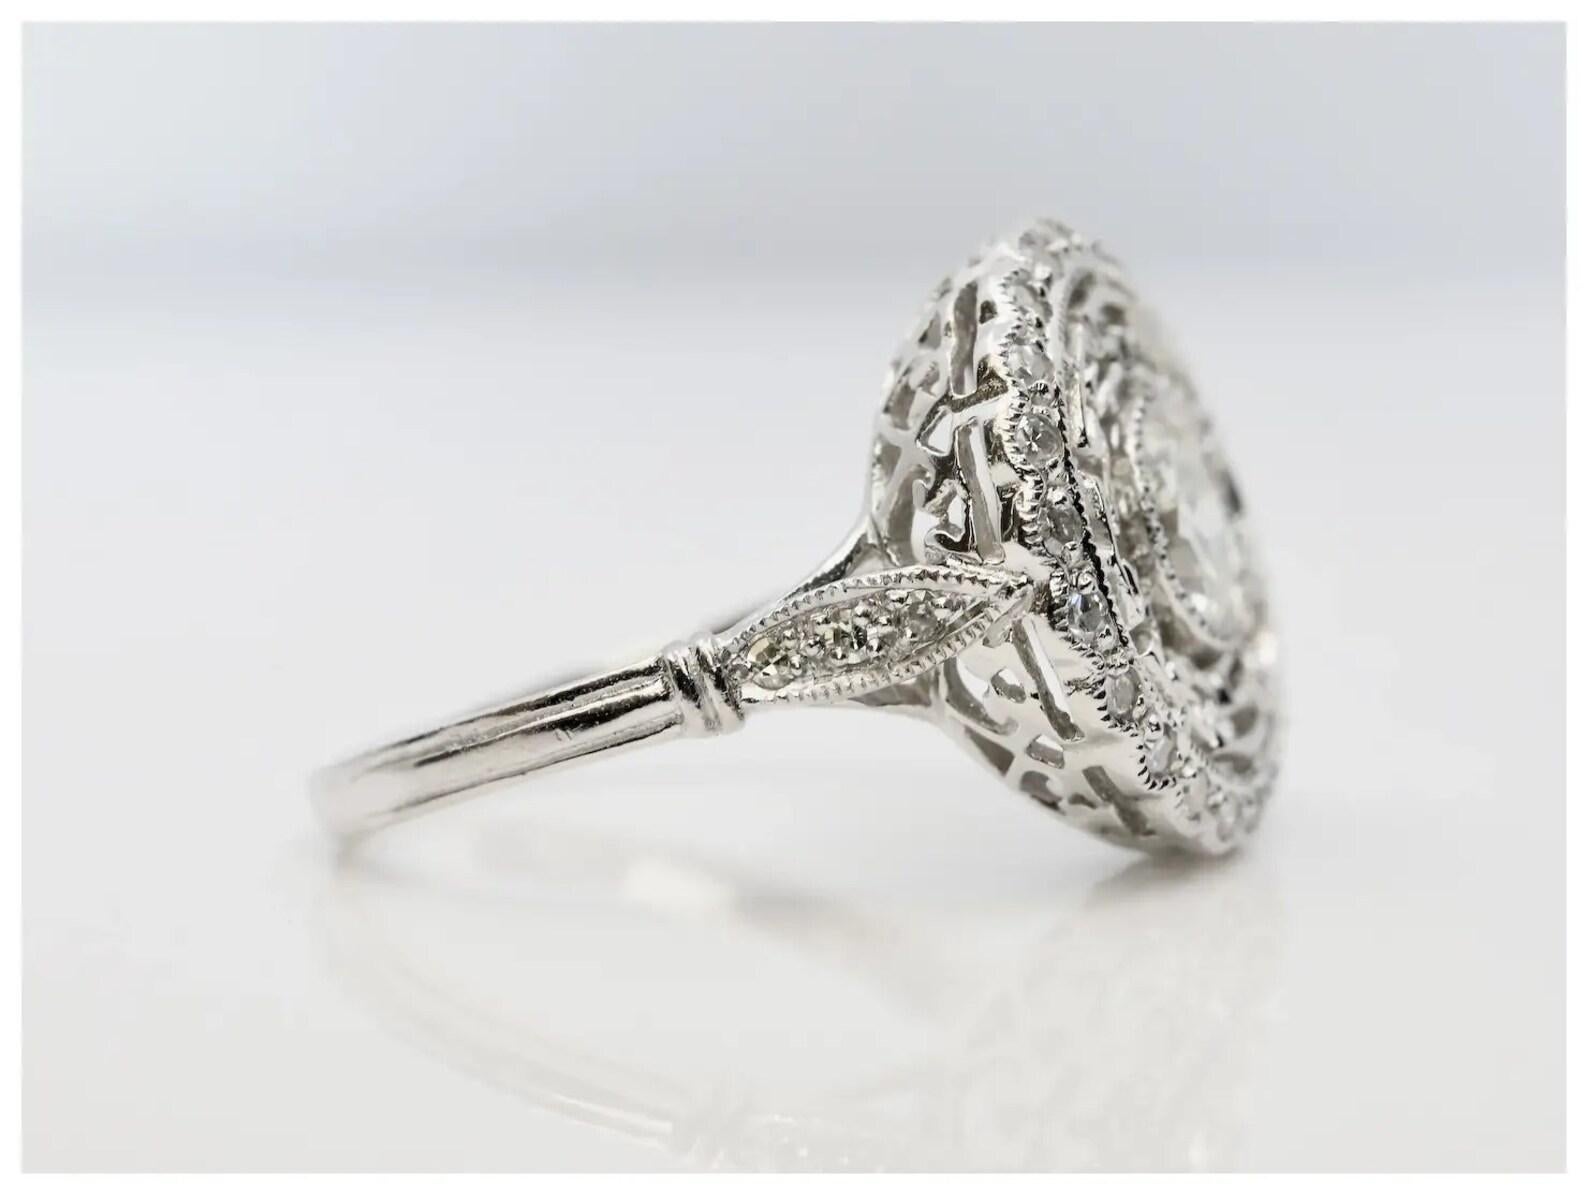 Ein diamantener Verlobungsring im Art-Déco-Stil, gefertigt aus Platin.

In der Mitte der Lünette befindet sich ein 0,74-karätiger Diamant im alten europäischen Schliff mit der Farbe I und der Reinheit VS1, eingefasst in eine